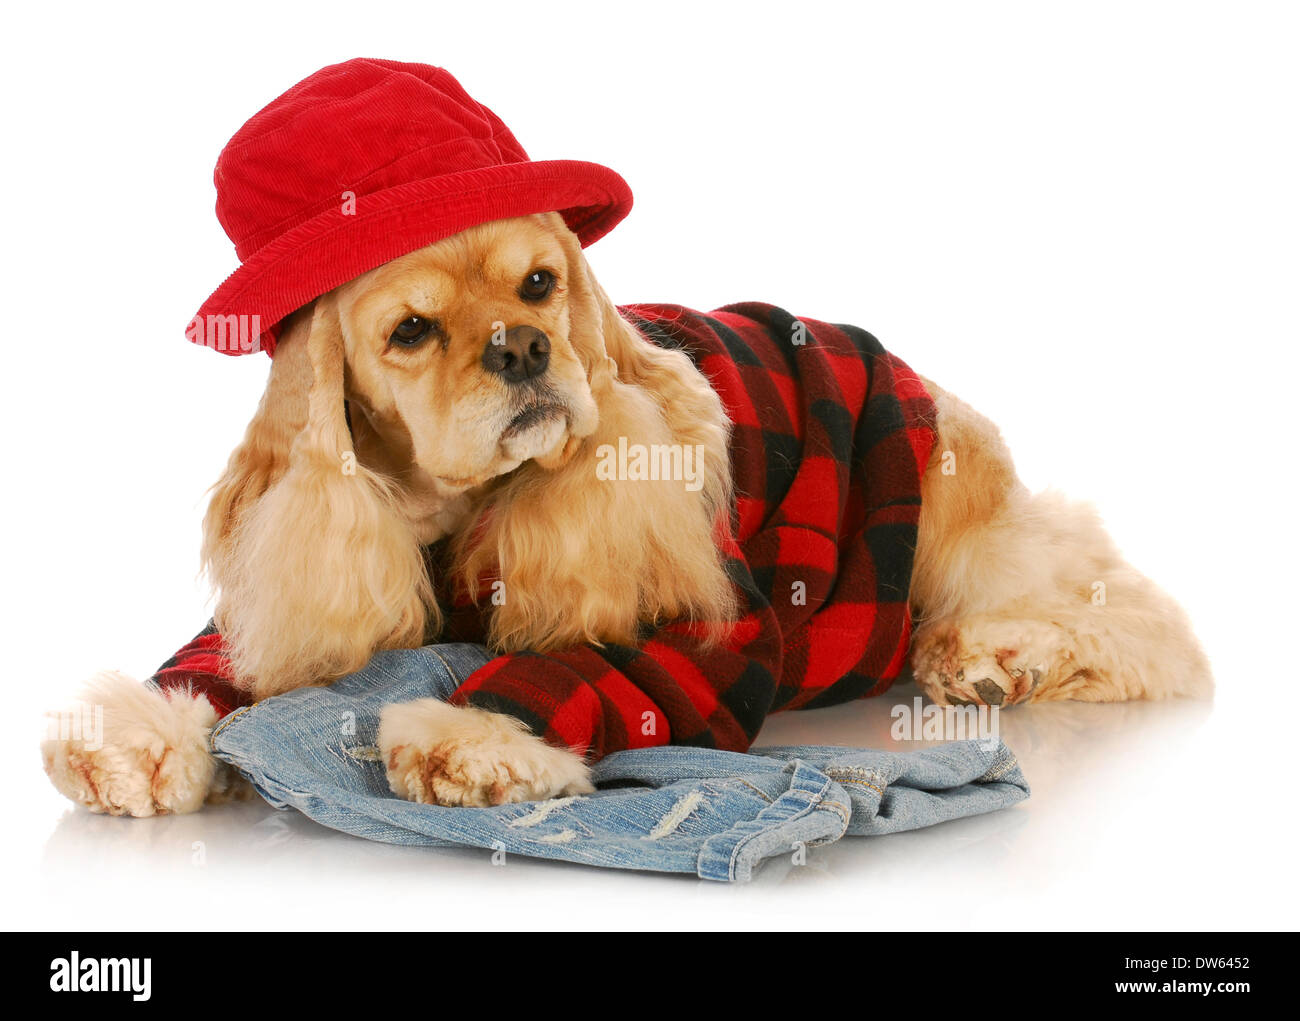 niedlichen Hund mit rotem Hut und kariertes Hemd - amerikanischer Cockerspaniel Stockfoto